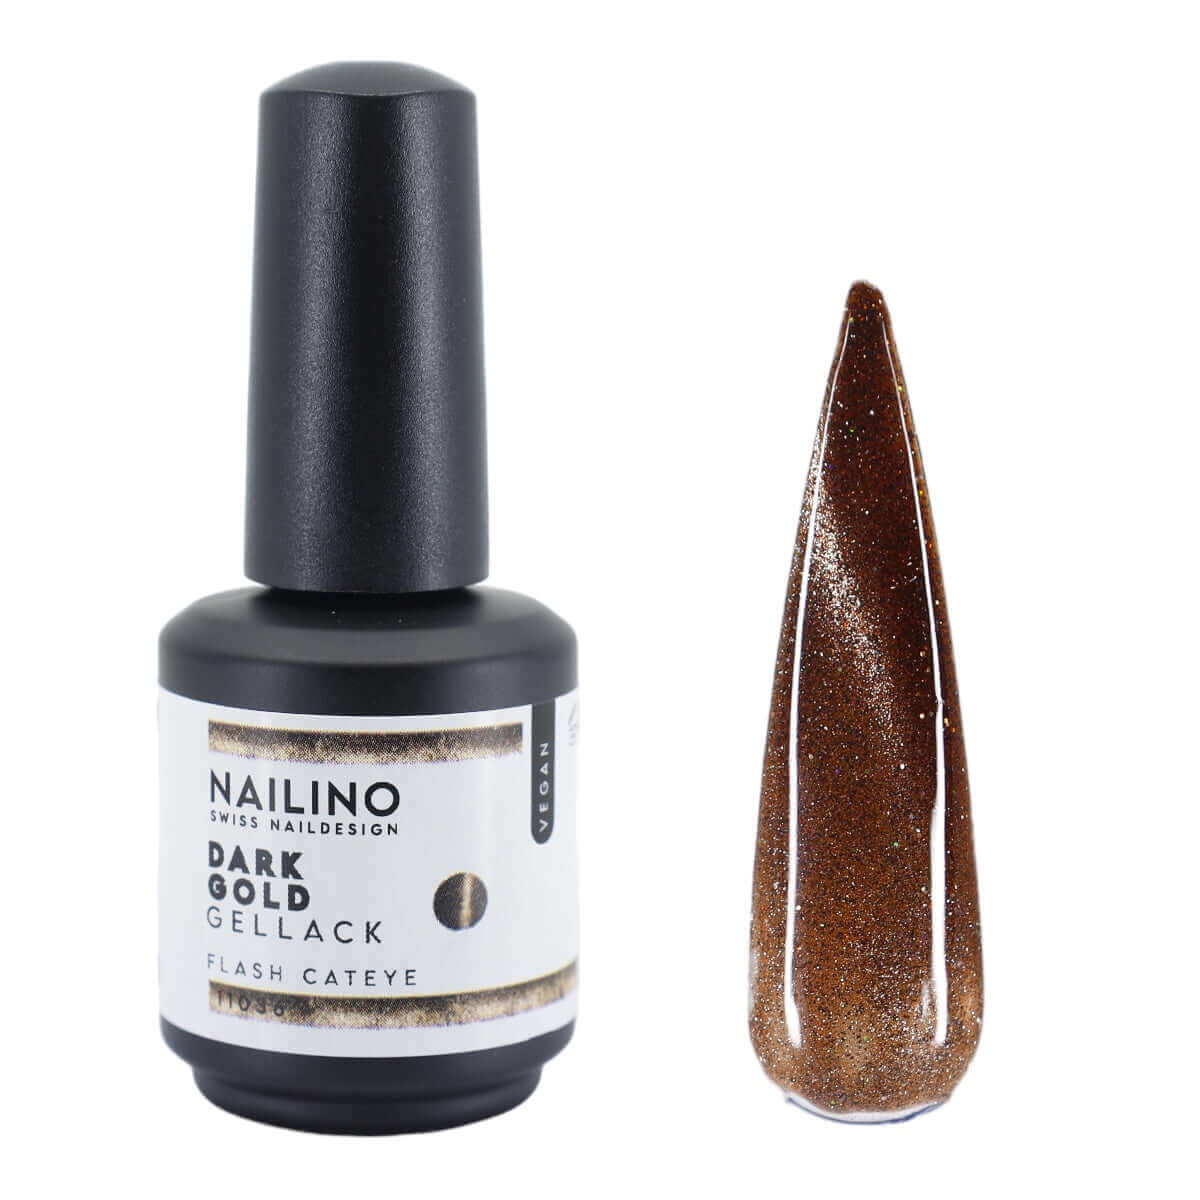 NAILINO Shellac Dark Gold -